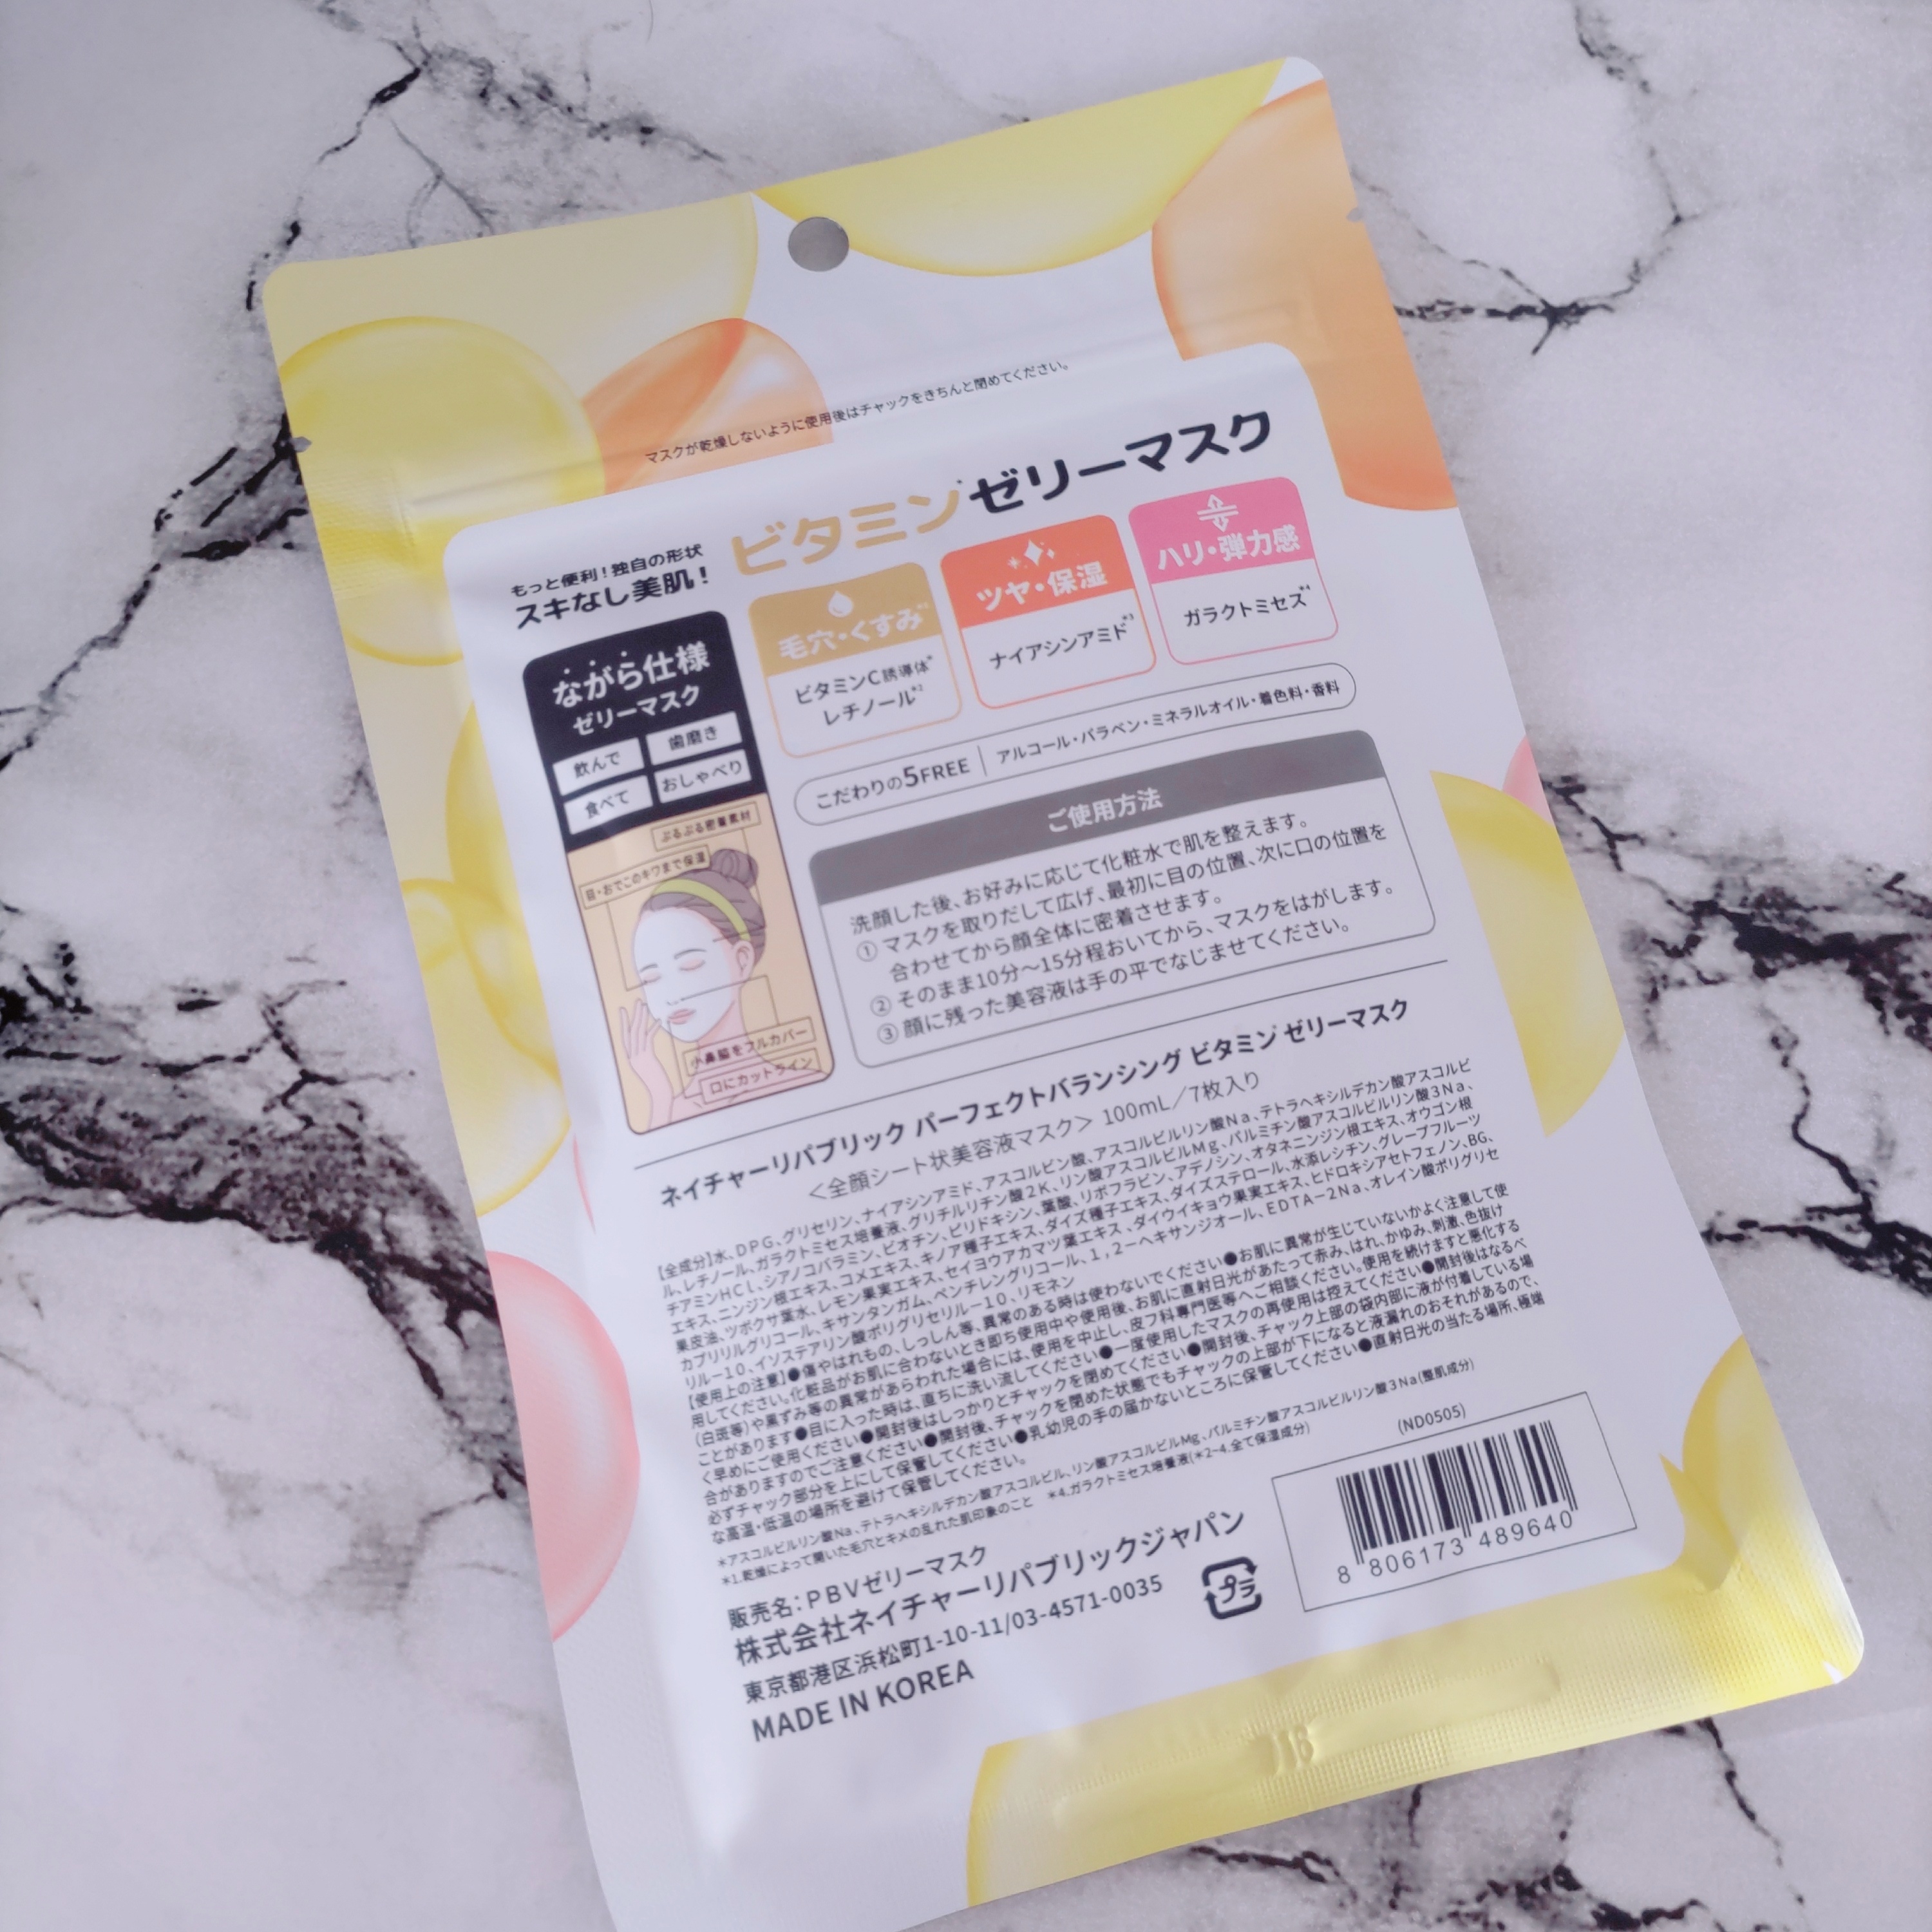 ネイチャーリパブリック YOKUBARI パーフェクトバランシング ビタミンゼリーマスクを使ったYuKaRi♡さんのクチコミ画像2